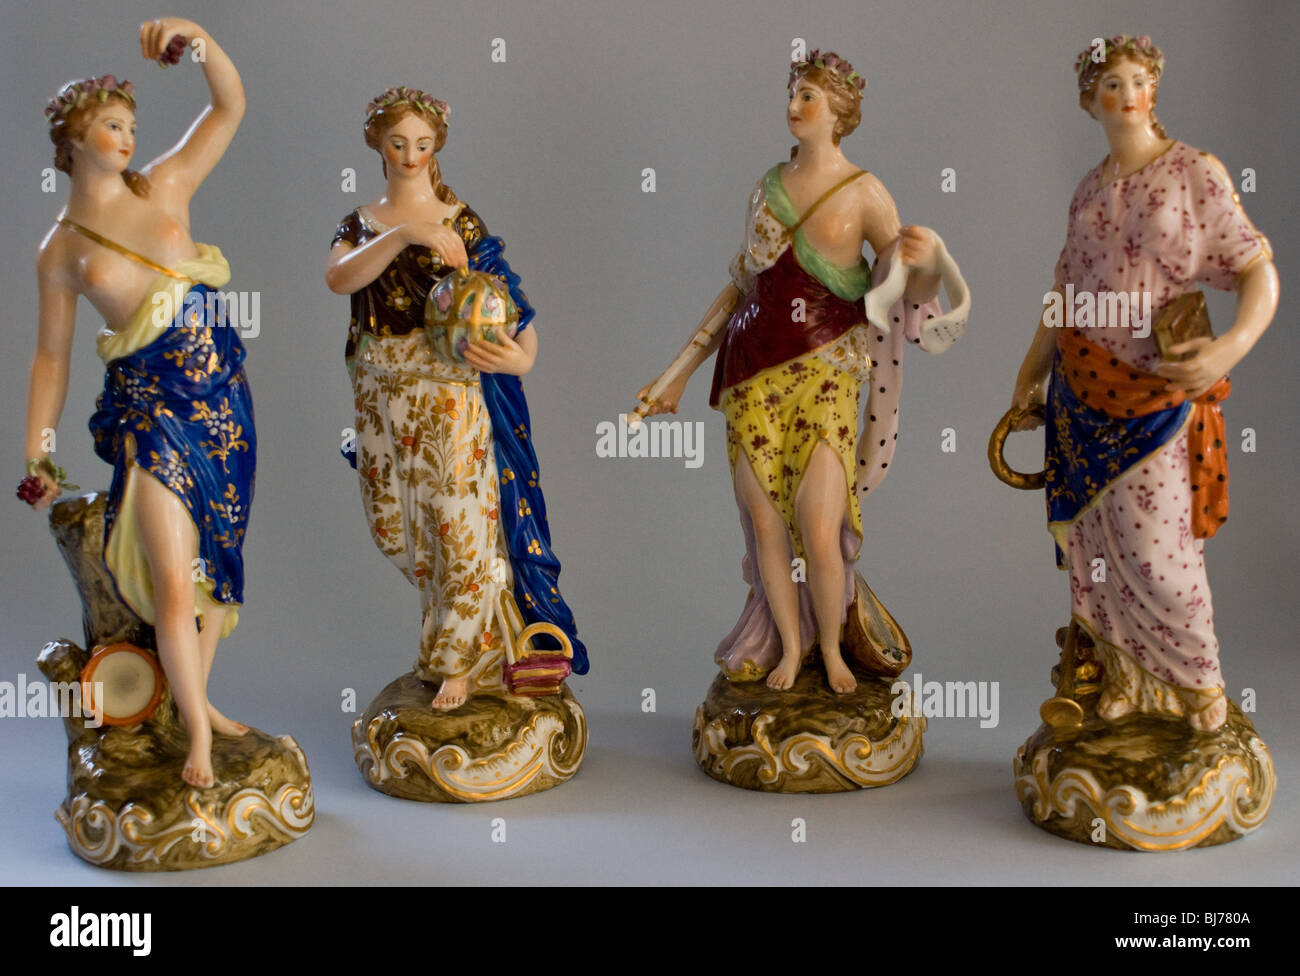 DERBY porcelanas antiguas figuras de cuatro de las musas de la mitología griega Foto de stock